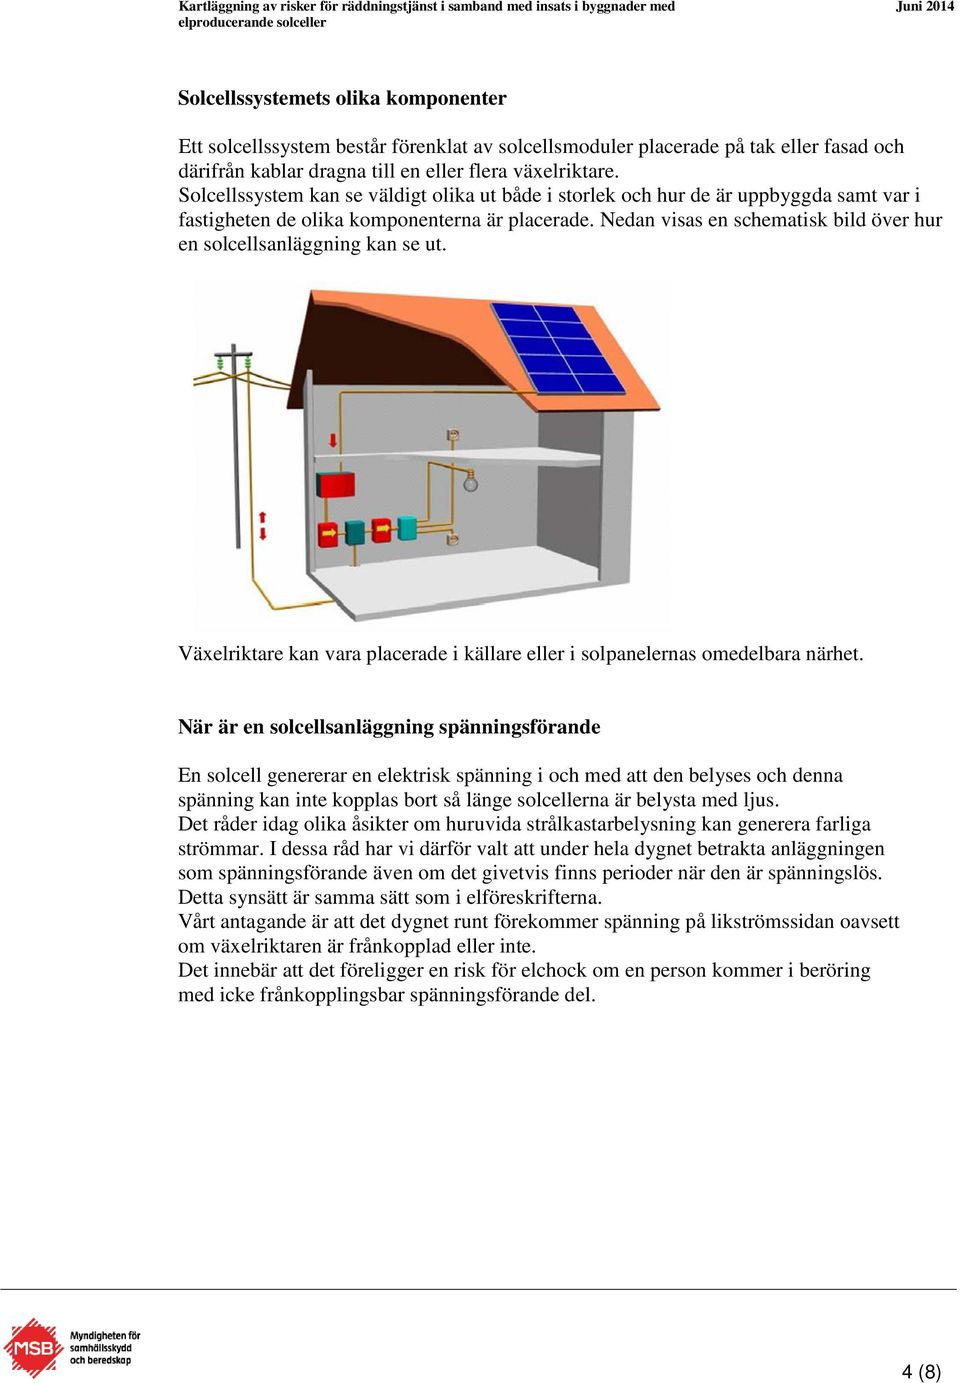 Nedan visas en schematisk bild över hur en solcellsanläggning kan se ut. Växelriktare kan vara placerade i källare eller i solpanelernas omedelbara närhet.